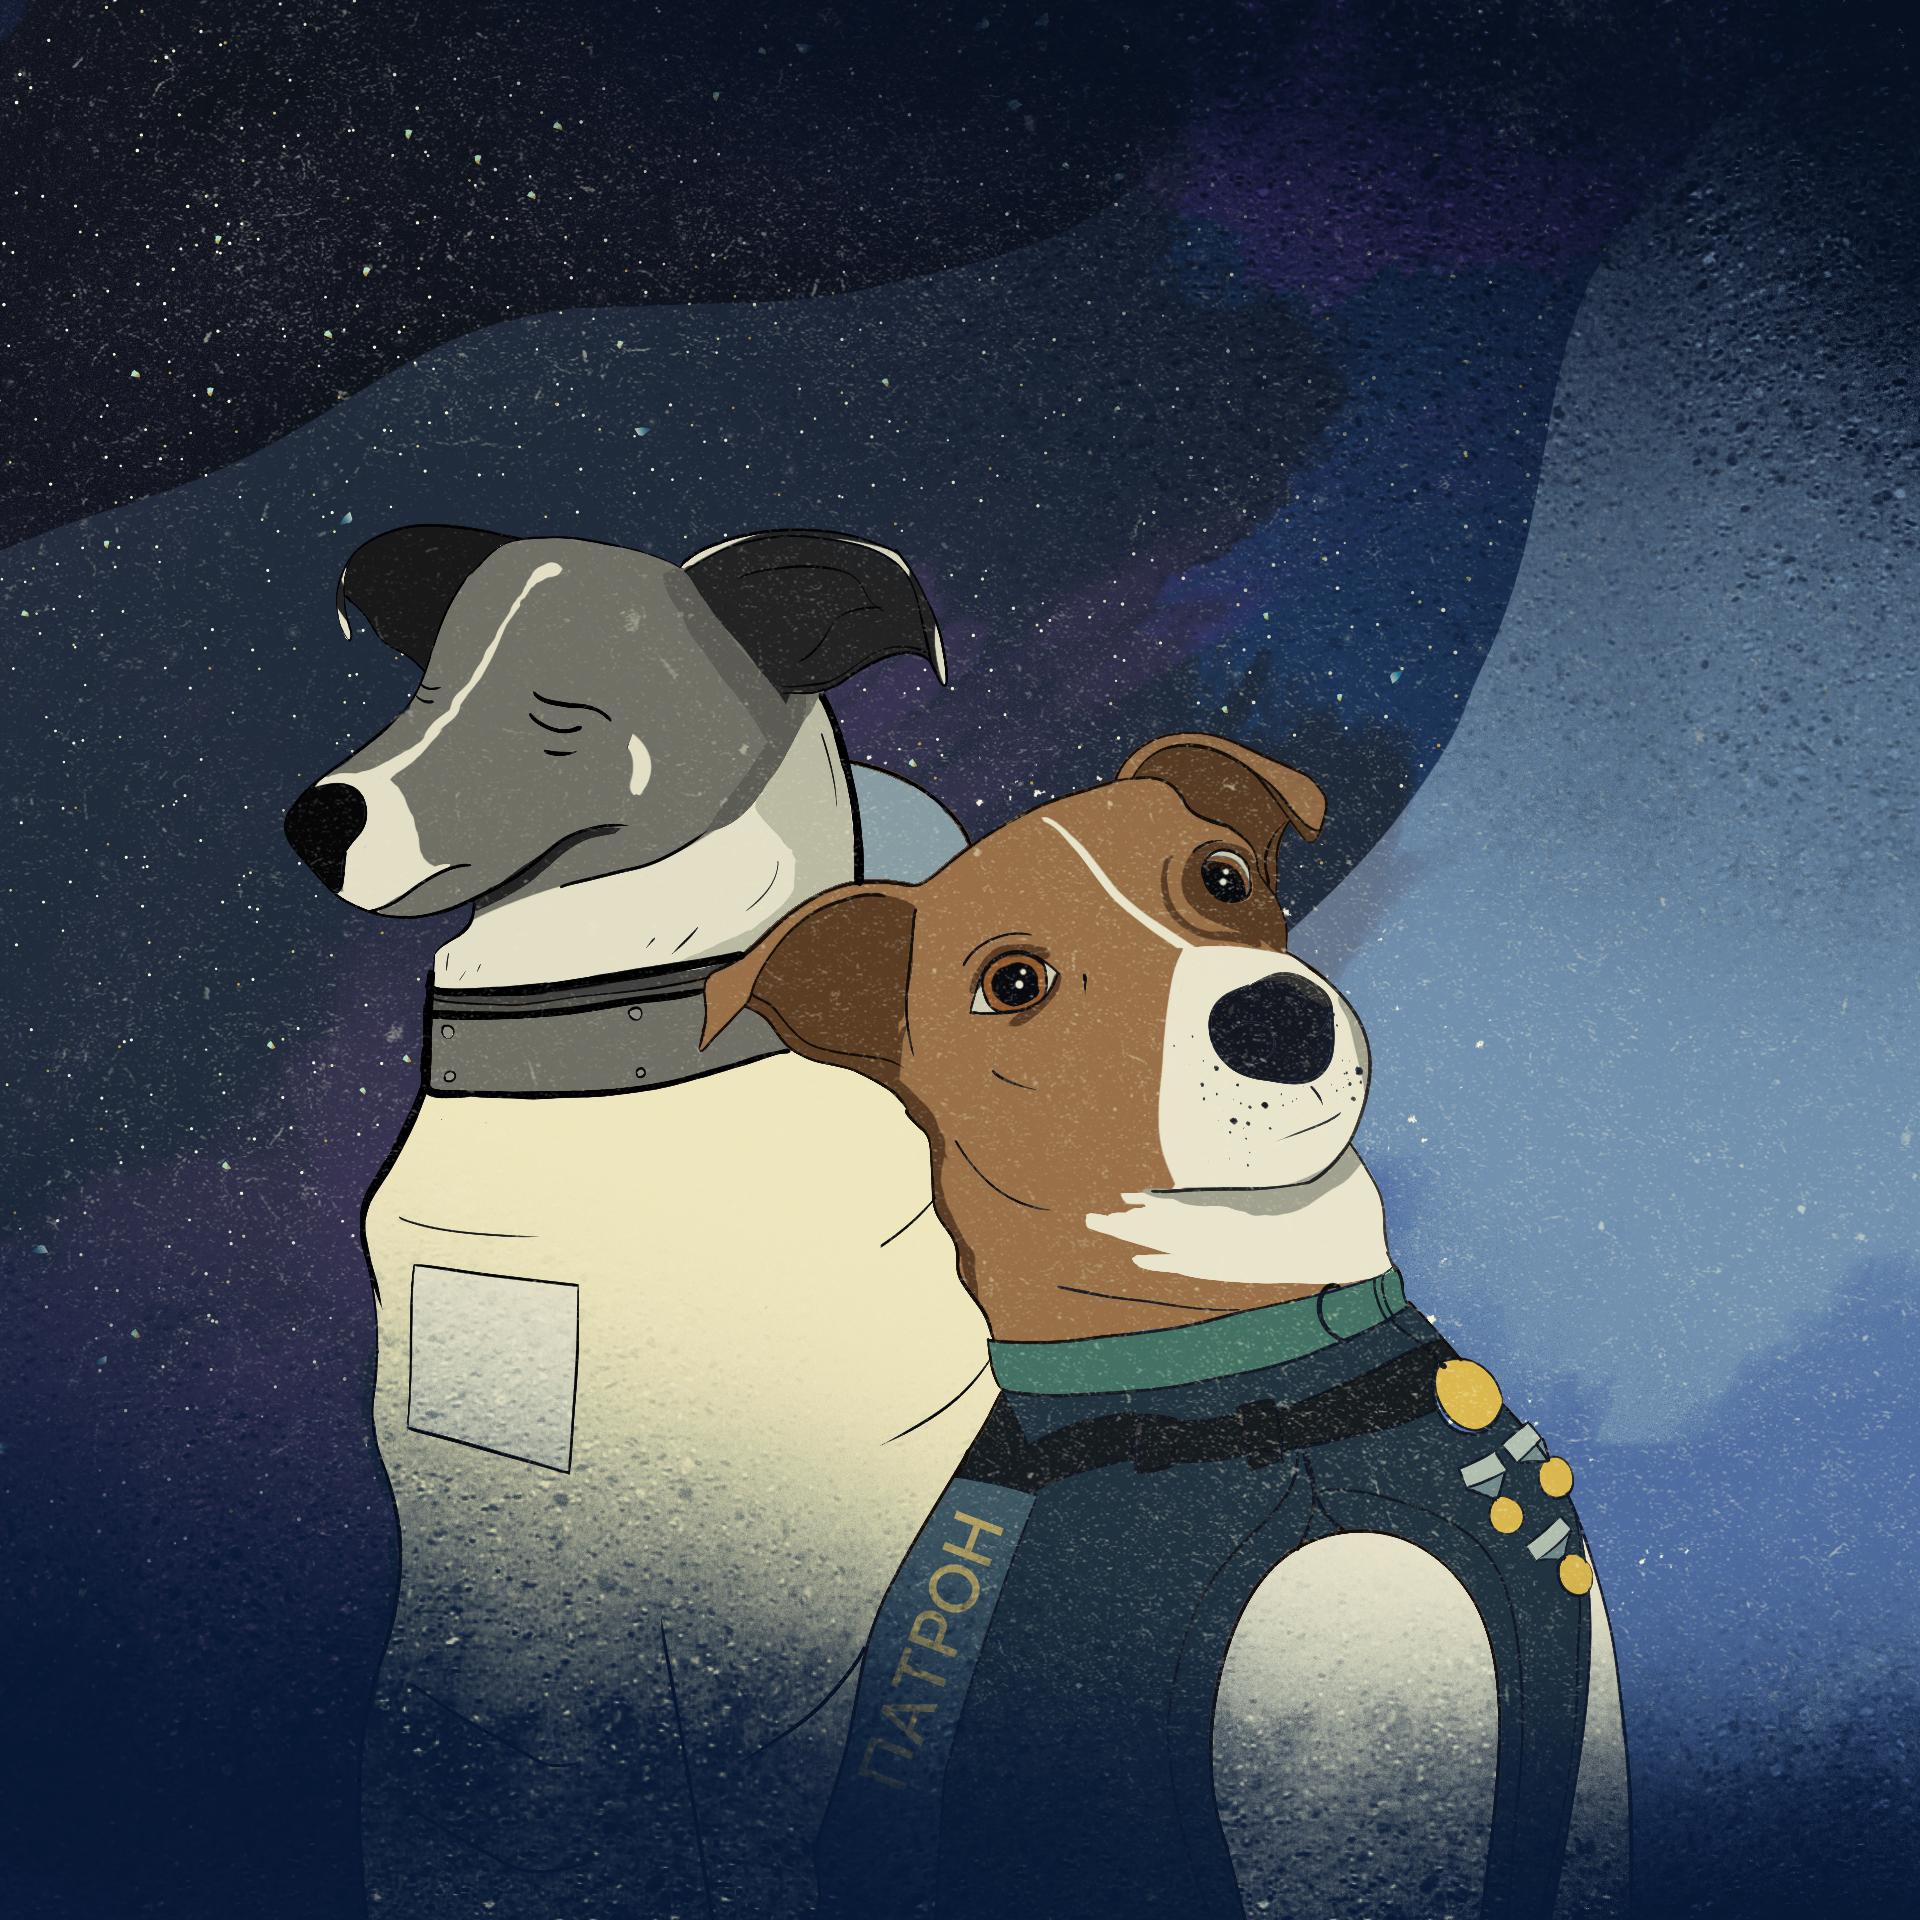 Ilustracja przedstawiająca psa o imieniu Patron/ (rasy Jack Russel Terrier) w kamizelce kuloodpornej, a na drugim planie suczkę Łajkę w skafandrze kosmicznym